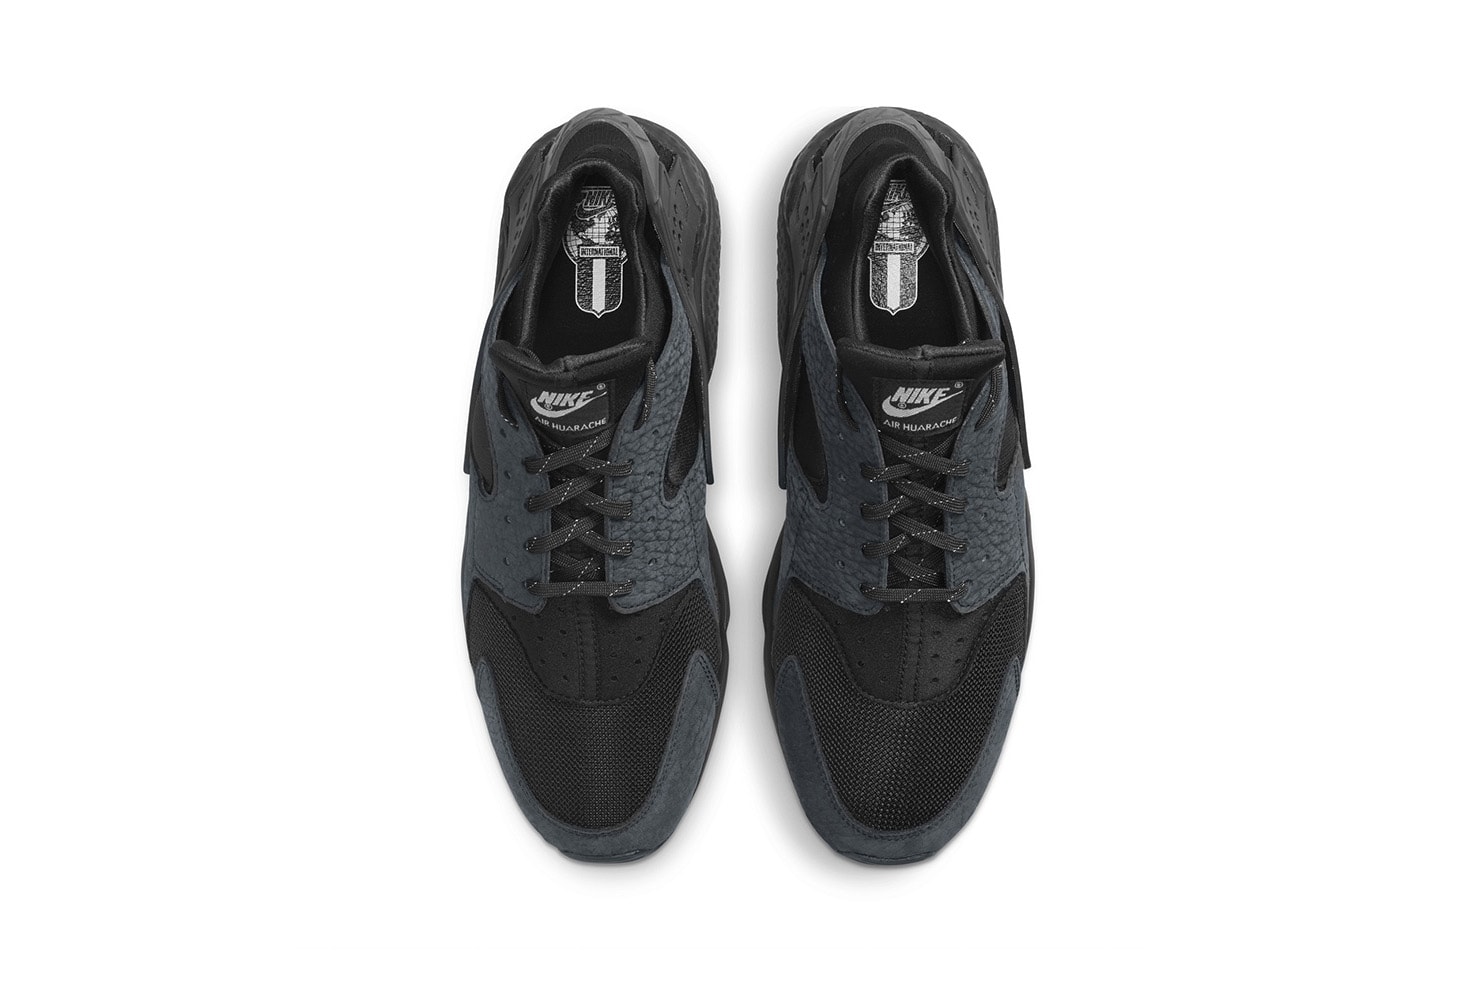 ナイキ から エアハラチ  誕生30周年を記念したモデルが発売 Nike Huarache OG Black White Have You Hugged Your Foot Today 1992 Campaign Swoosh Original Footwear Shoe Sneaker Release Information Drop Date Goodhood Raffle